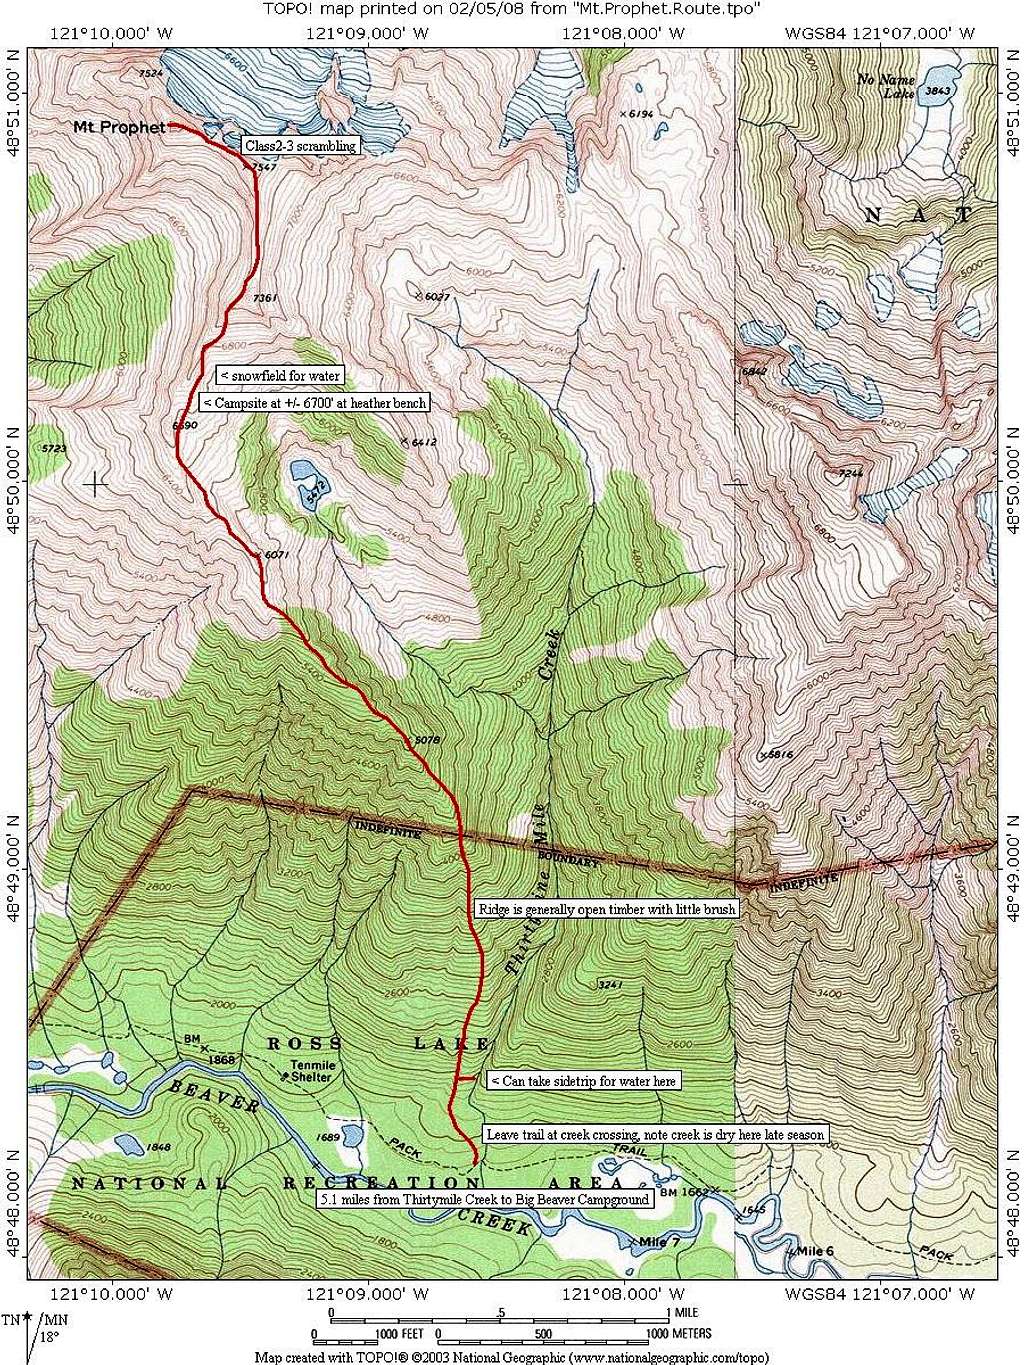 Mt. Prophet route map